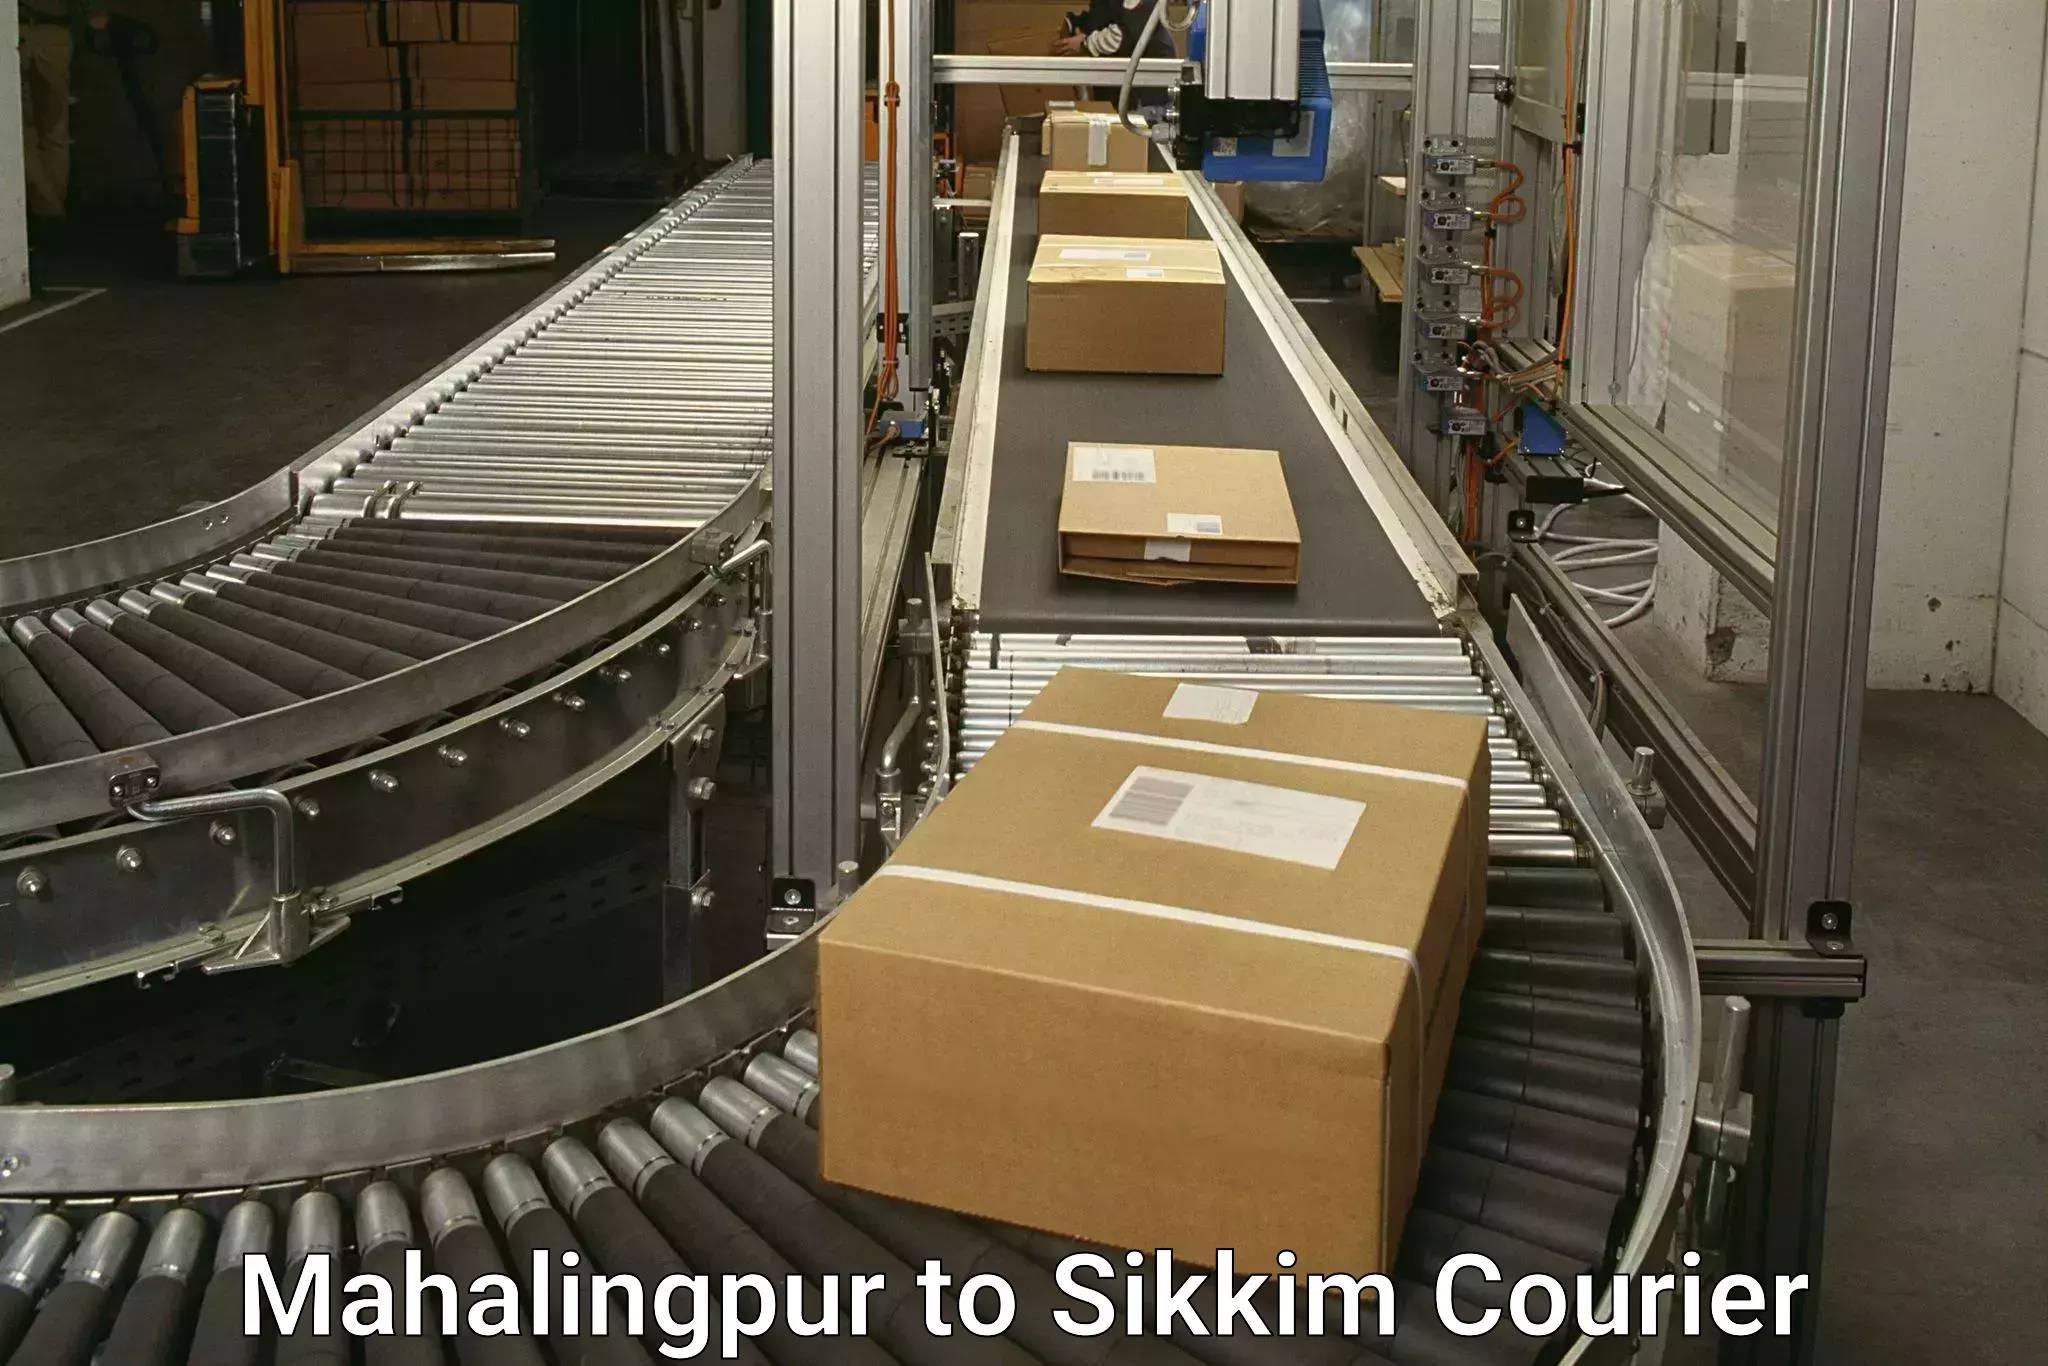 Global shipping networks Mahalingpur to Rangpo